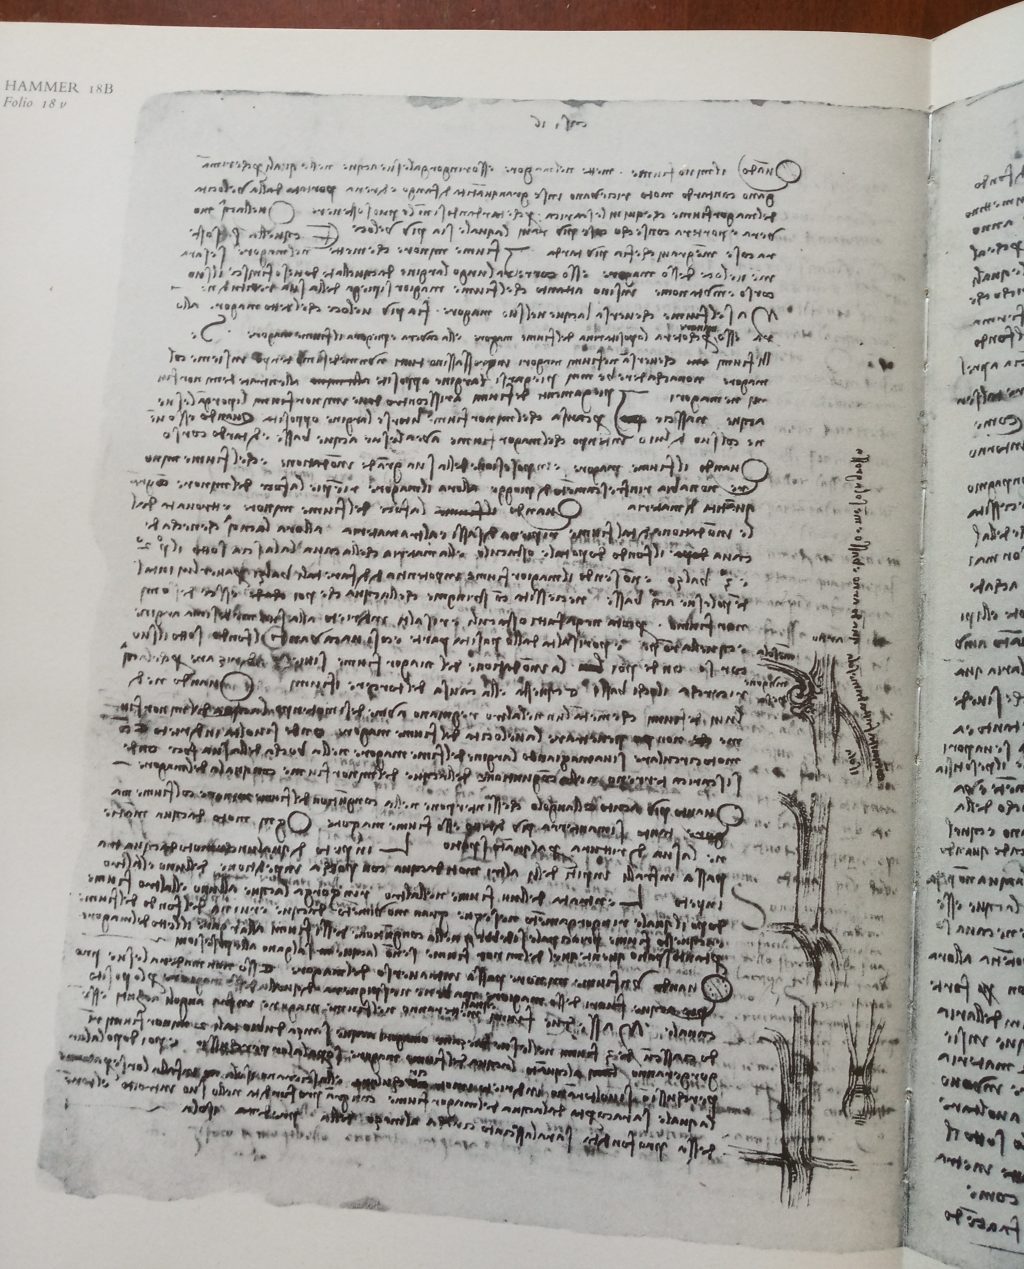 Confluenza del Mensola nell'Arno, Codice Hammer 18B, Leonardo da Vinci 